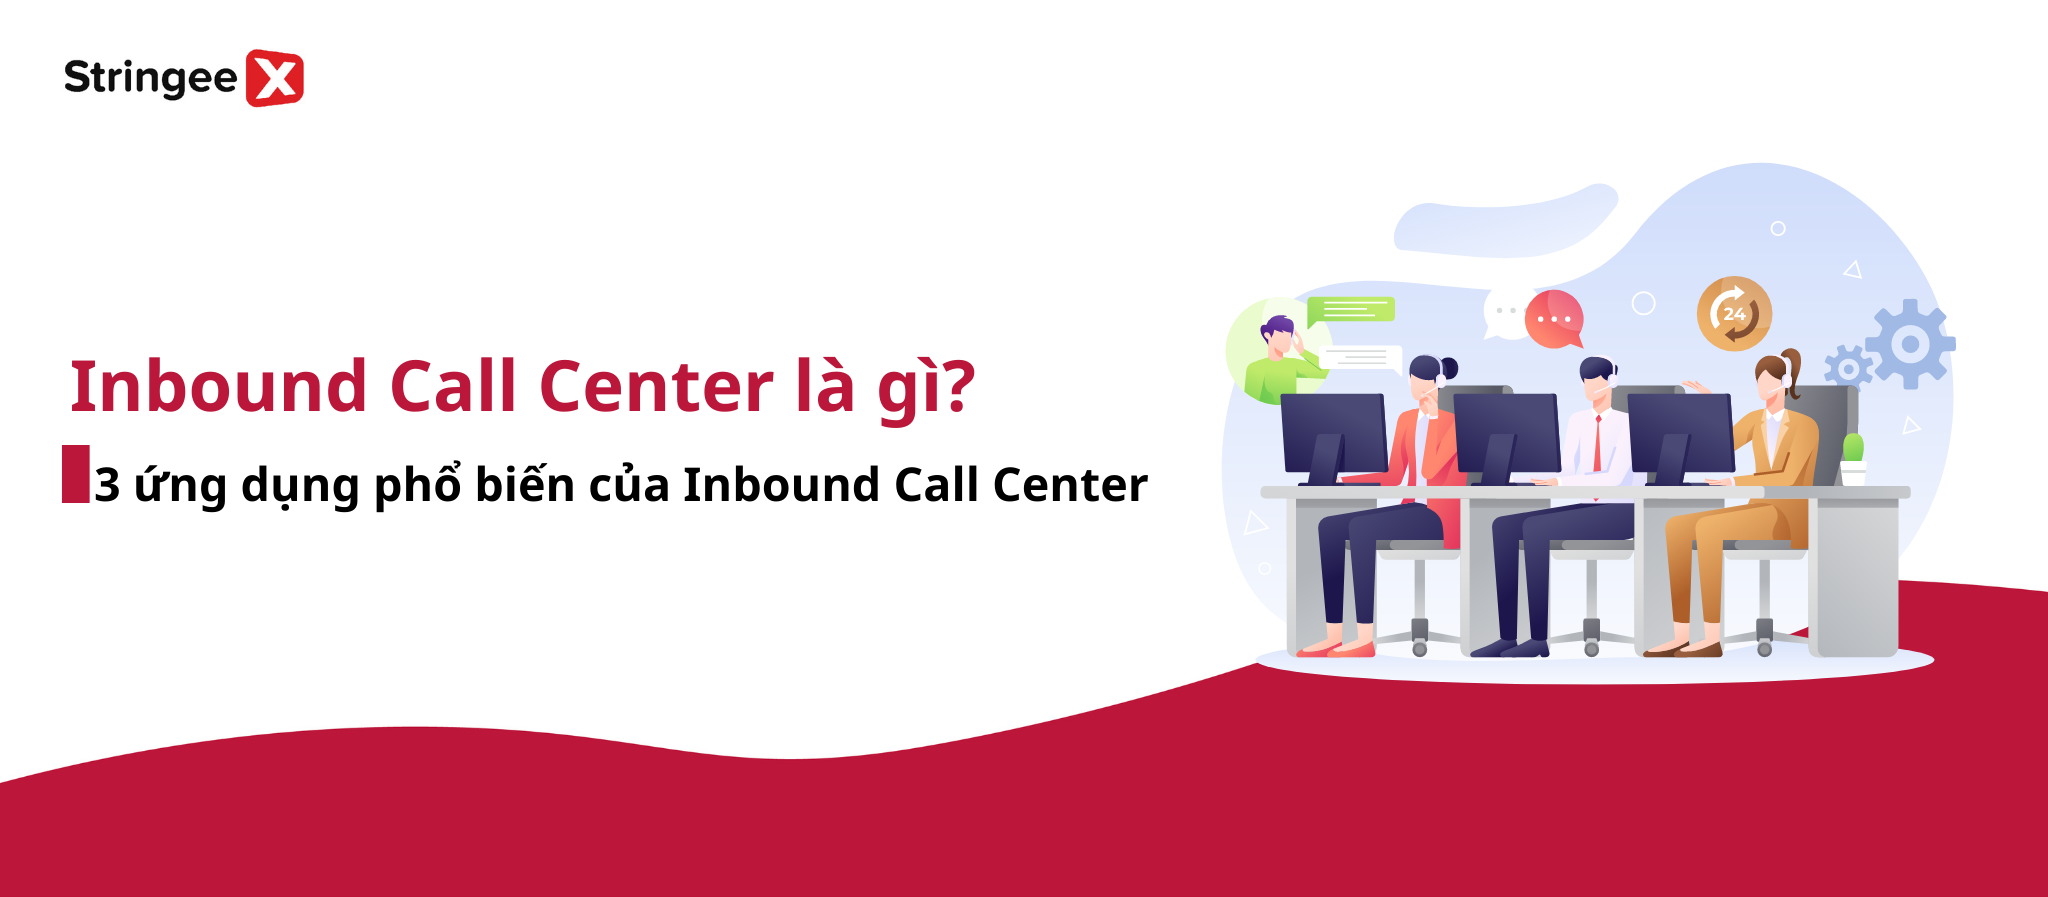 Inbound Call Center là gì? 3 ứng dụng phổ biến của Inbound Call Center